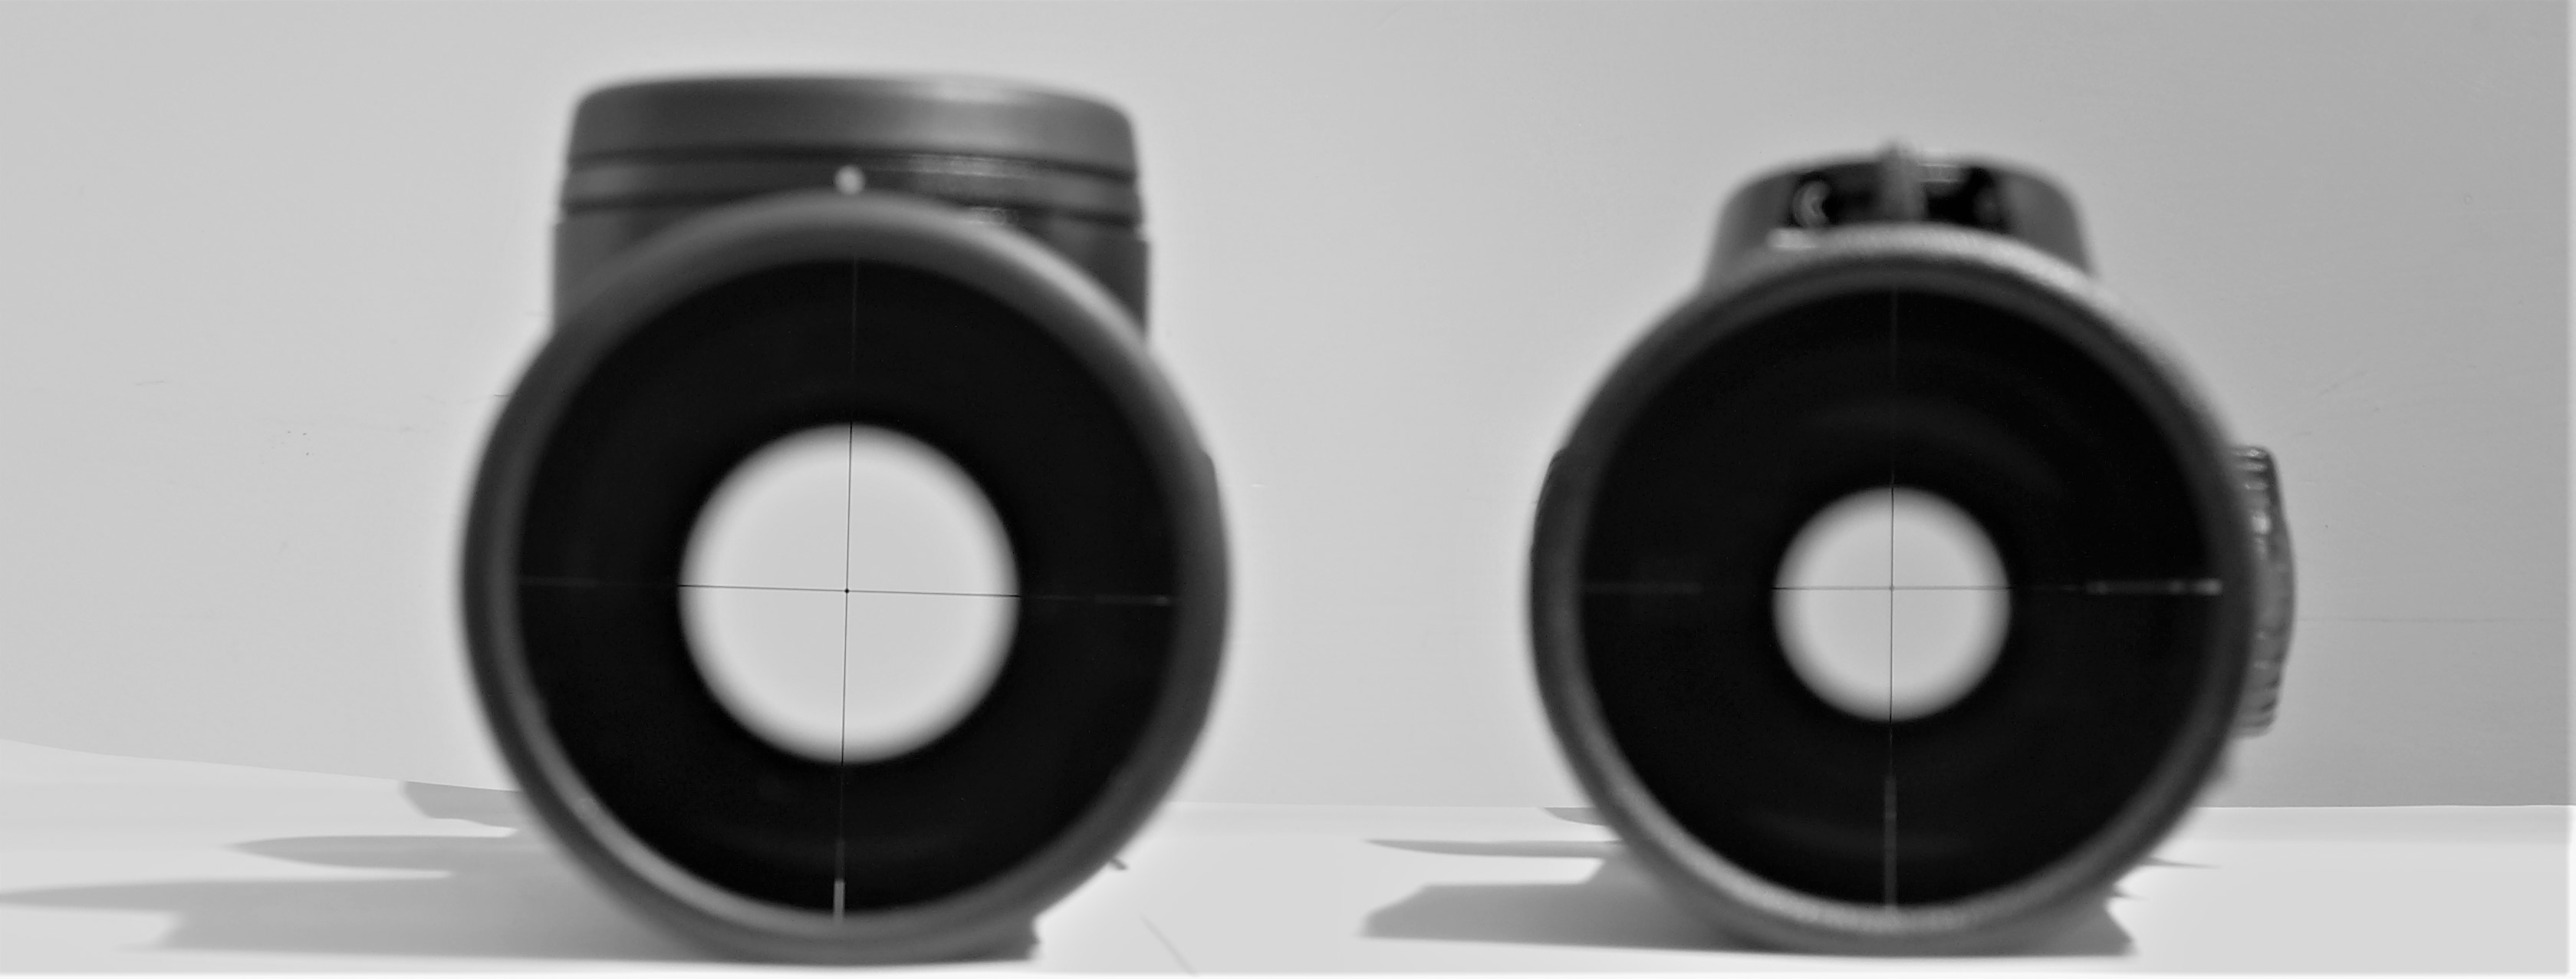 Due cannocchiali top di gamma di due dei migliori produttori al mondo, con prezzo oltre i 3000 euro; a sinistra Leica Magnus 2.4-16x56, a destra Swarovski Z8 2.3-18x56. La pupilla d'uscita del prodotto a sinistra, nonostante il leggermente maggior ingrandimento che dovrebbe penalizzarlo, ha il diametro del 53% più grande rispetto a quella del prodotto a destra.